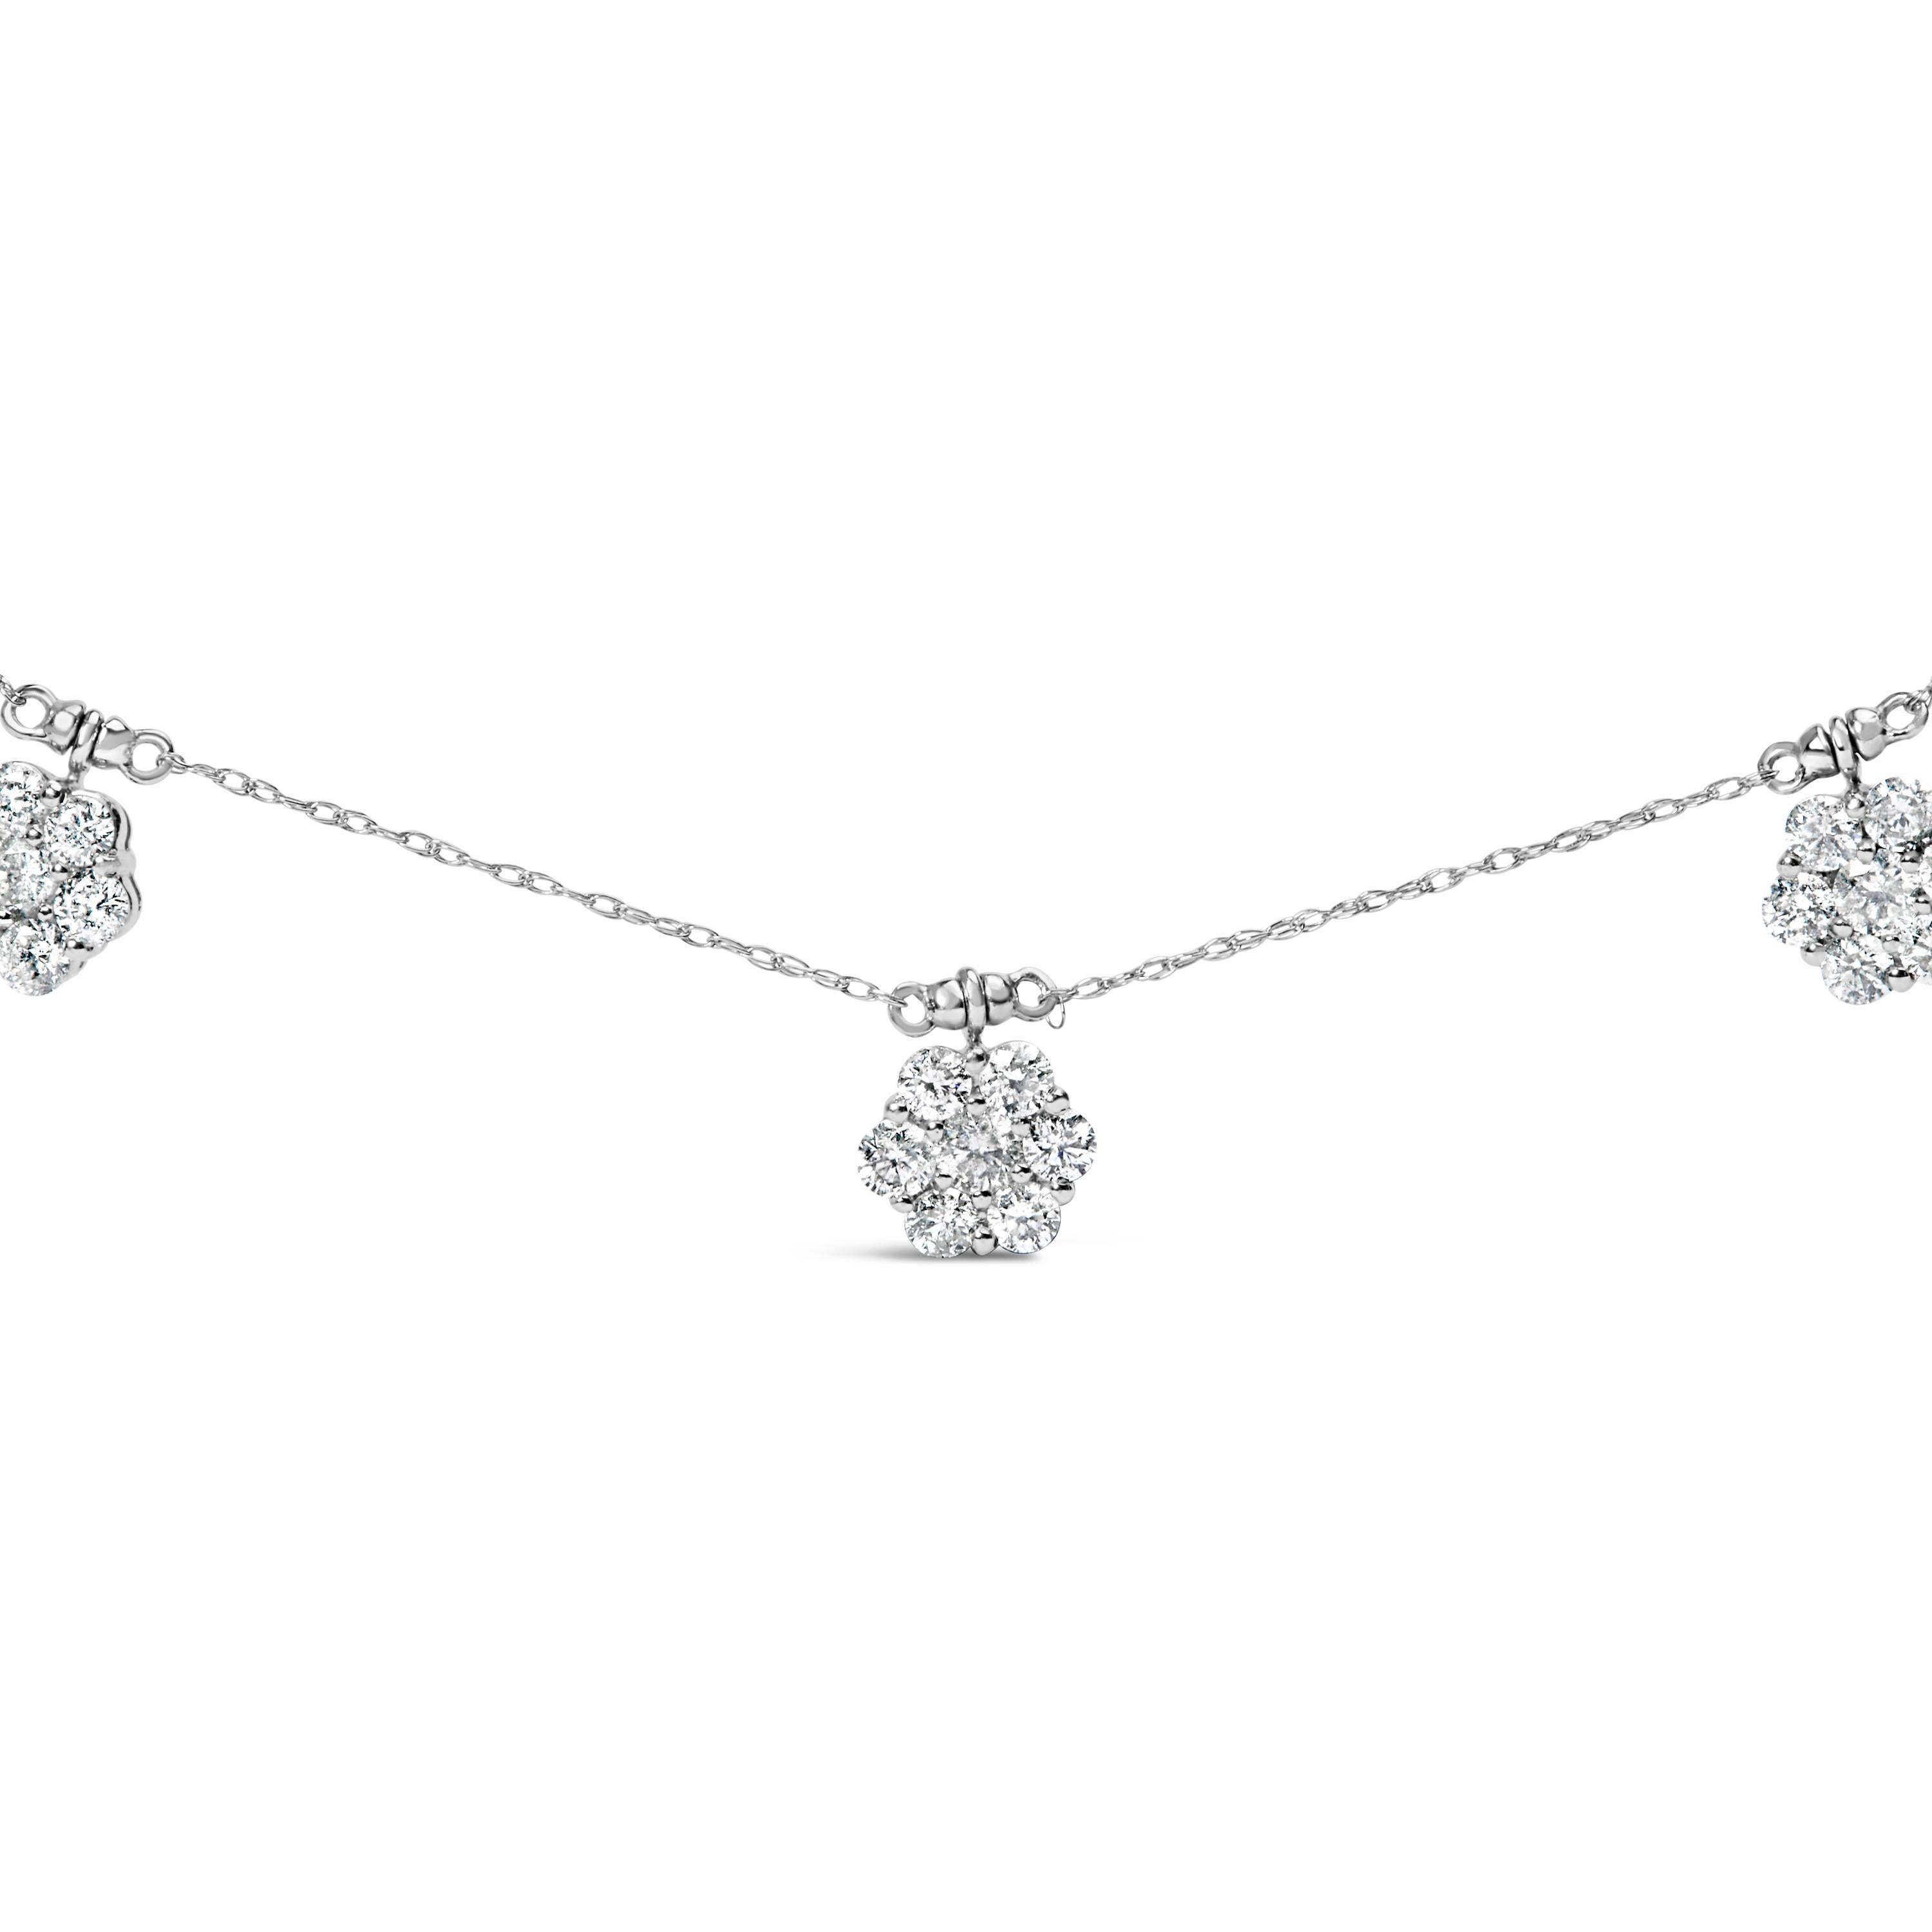 Apportez une touche d'élégance intemporelle à votre collection de bijoux avec cet exquis collier à station florale. Fabriquée en or blanc 10 carats, cette magnifique pièce est ornée de 49 diamants de taille ronde, d'une valeur totale de 3,0 cttw.